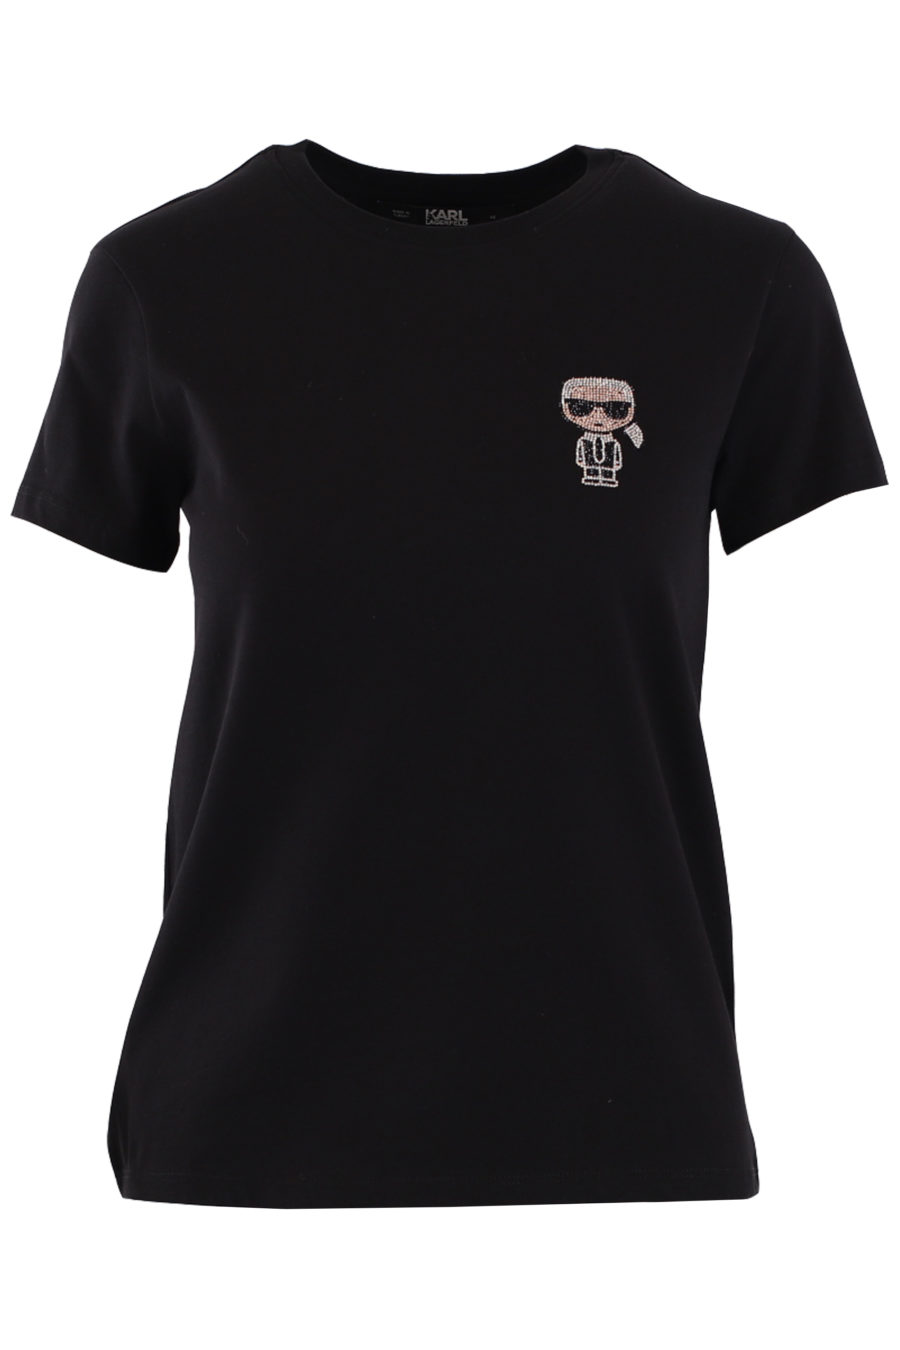 Camiseta negra con logo pequeño en strass - IMG 9023